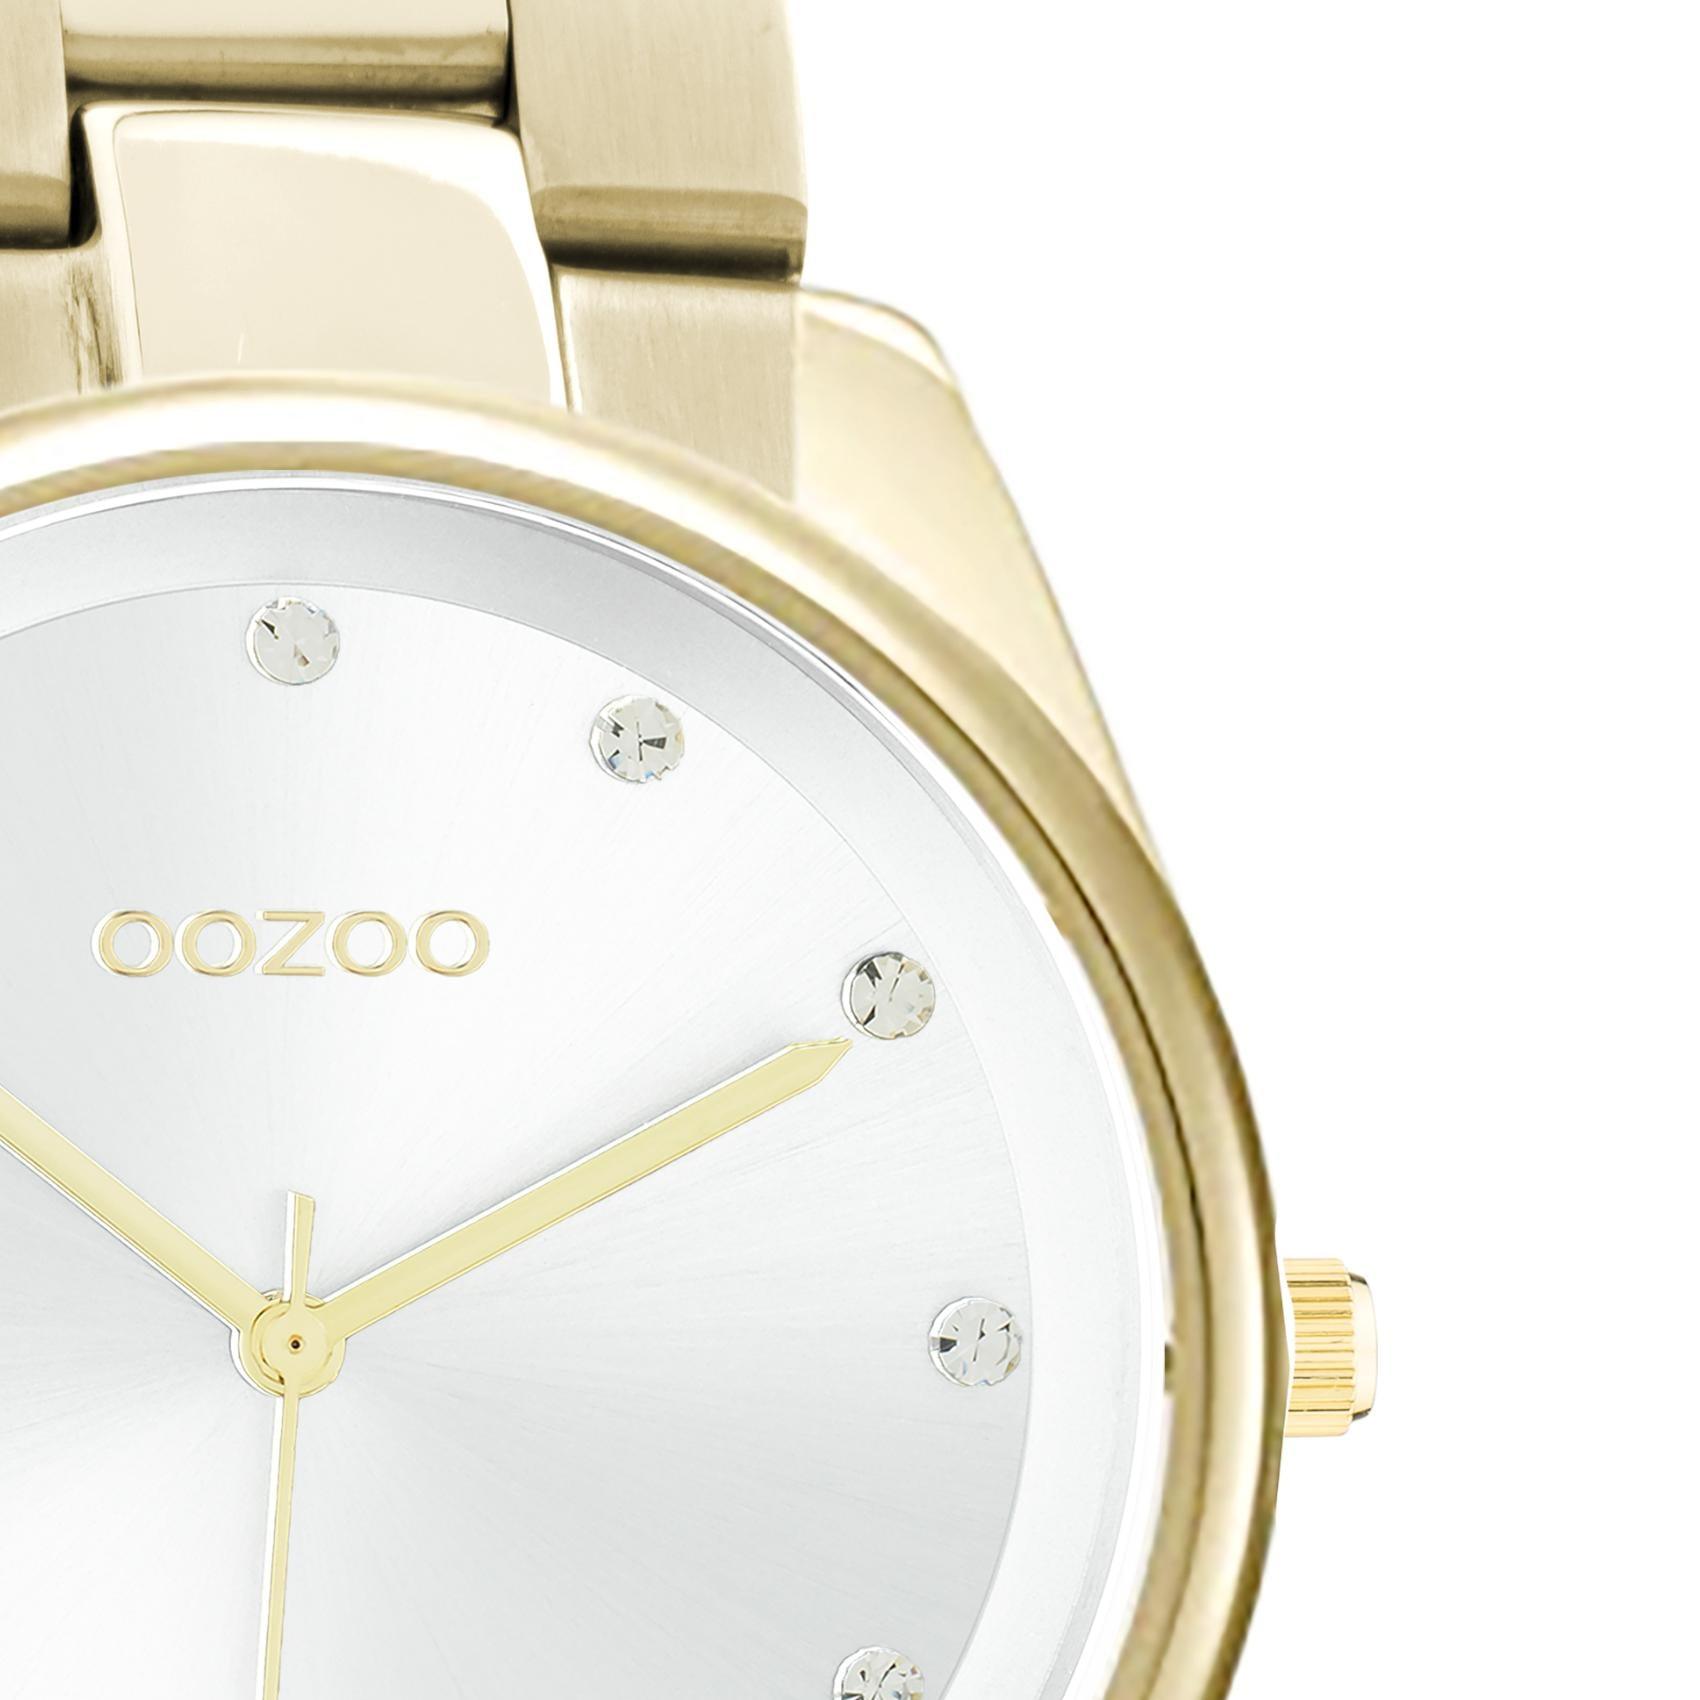 Ρολόι Oozoo C10962 με χρυσό ατσάλινο μπρασελέ, άσπρο καντράν διαμέτρου 36mm με ζιργκόν και μηχανισμό μπαταρίας quartz.